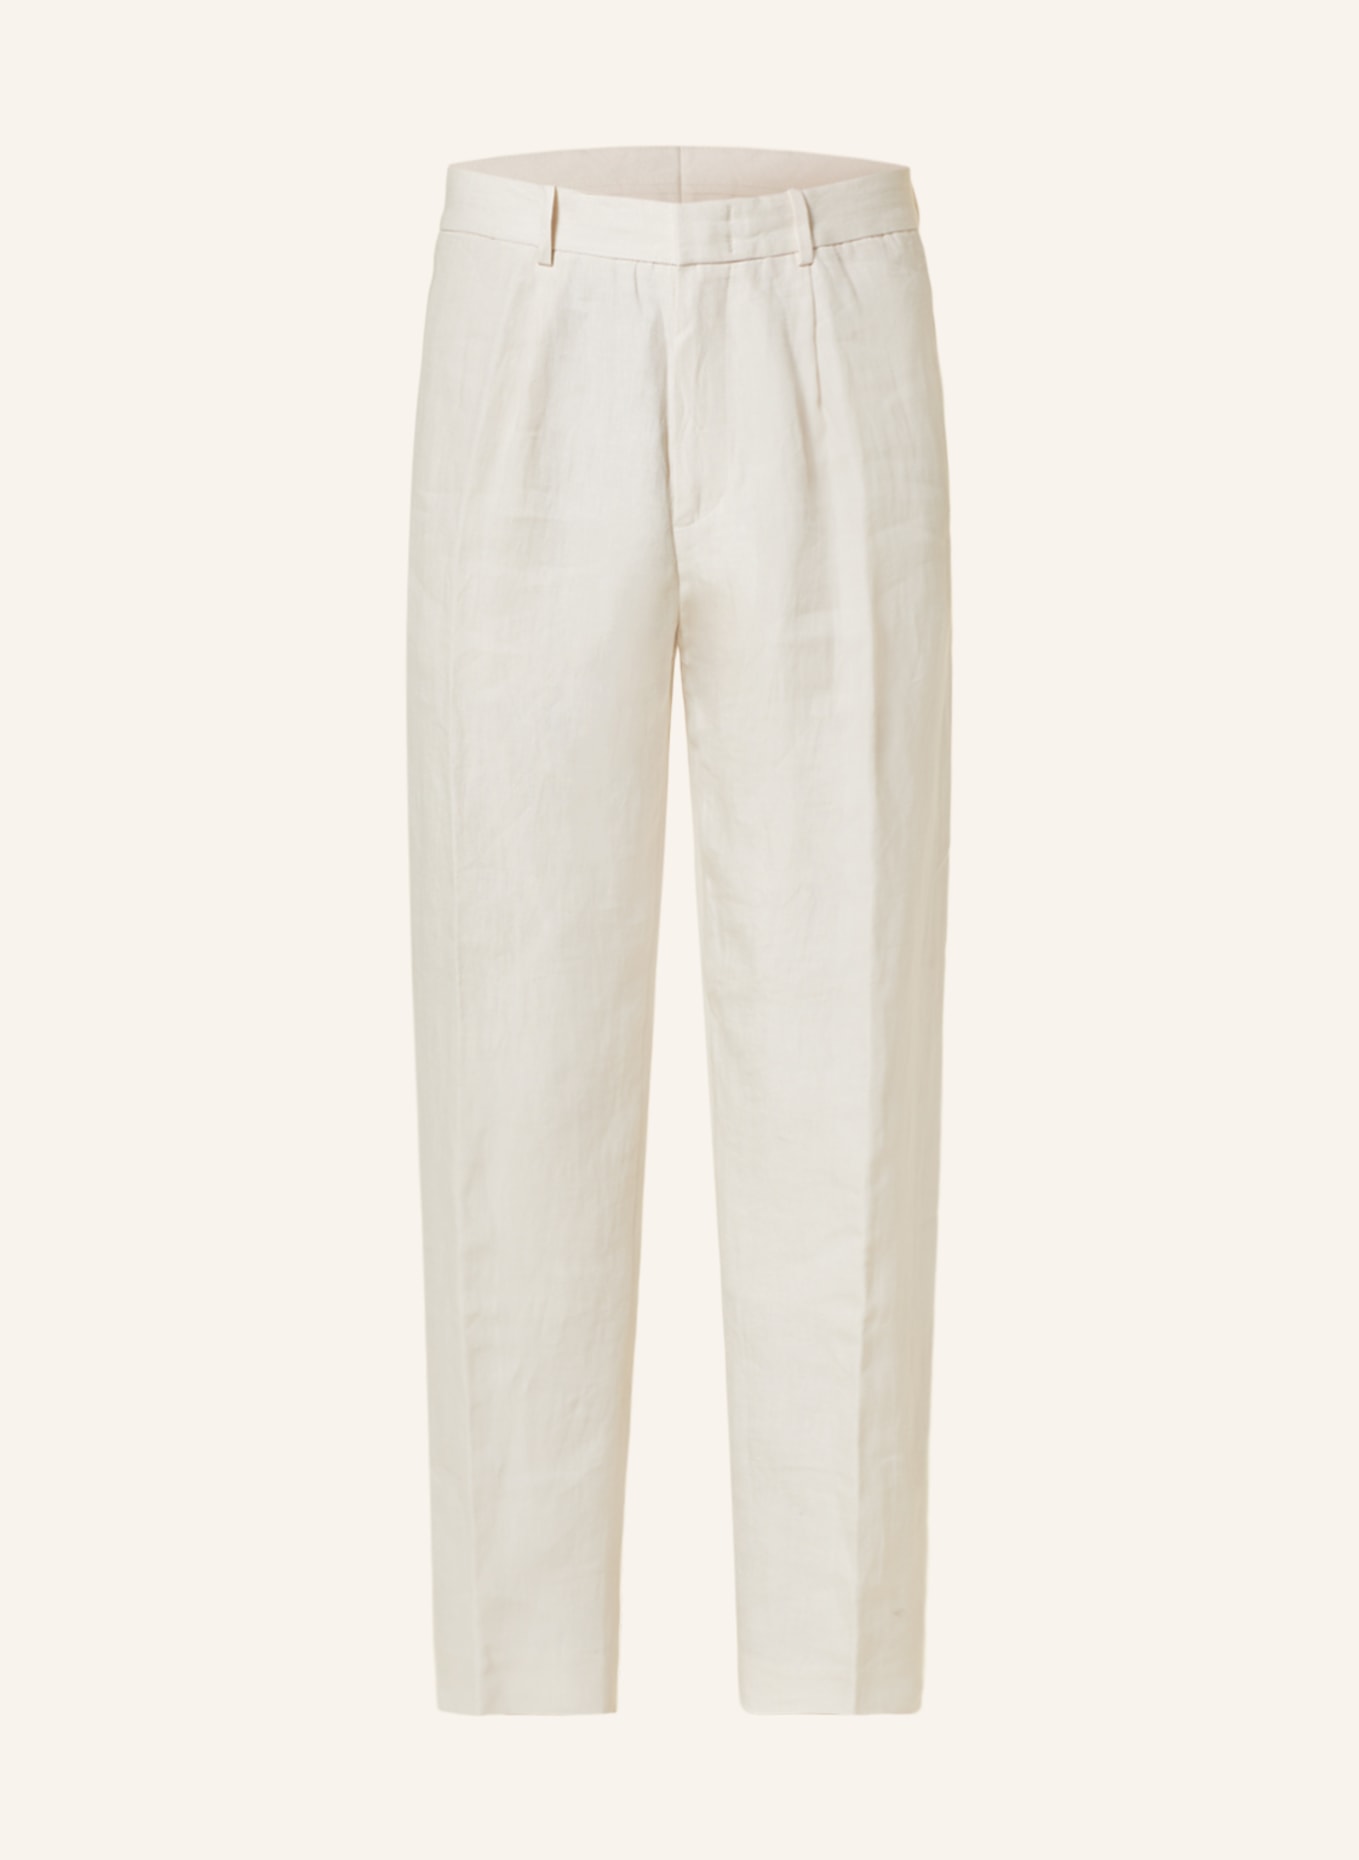 COS Linen trousers slim fit, Color: 001 BEIGE DUSTY LIGHT (Image 1)